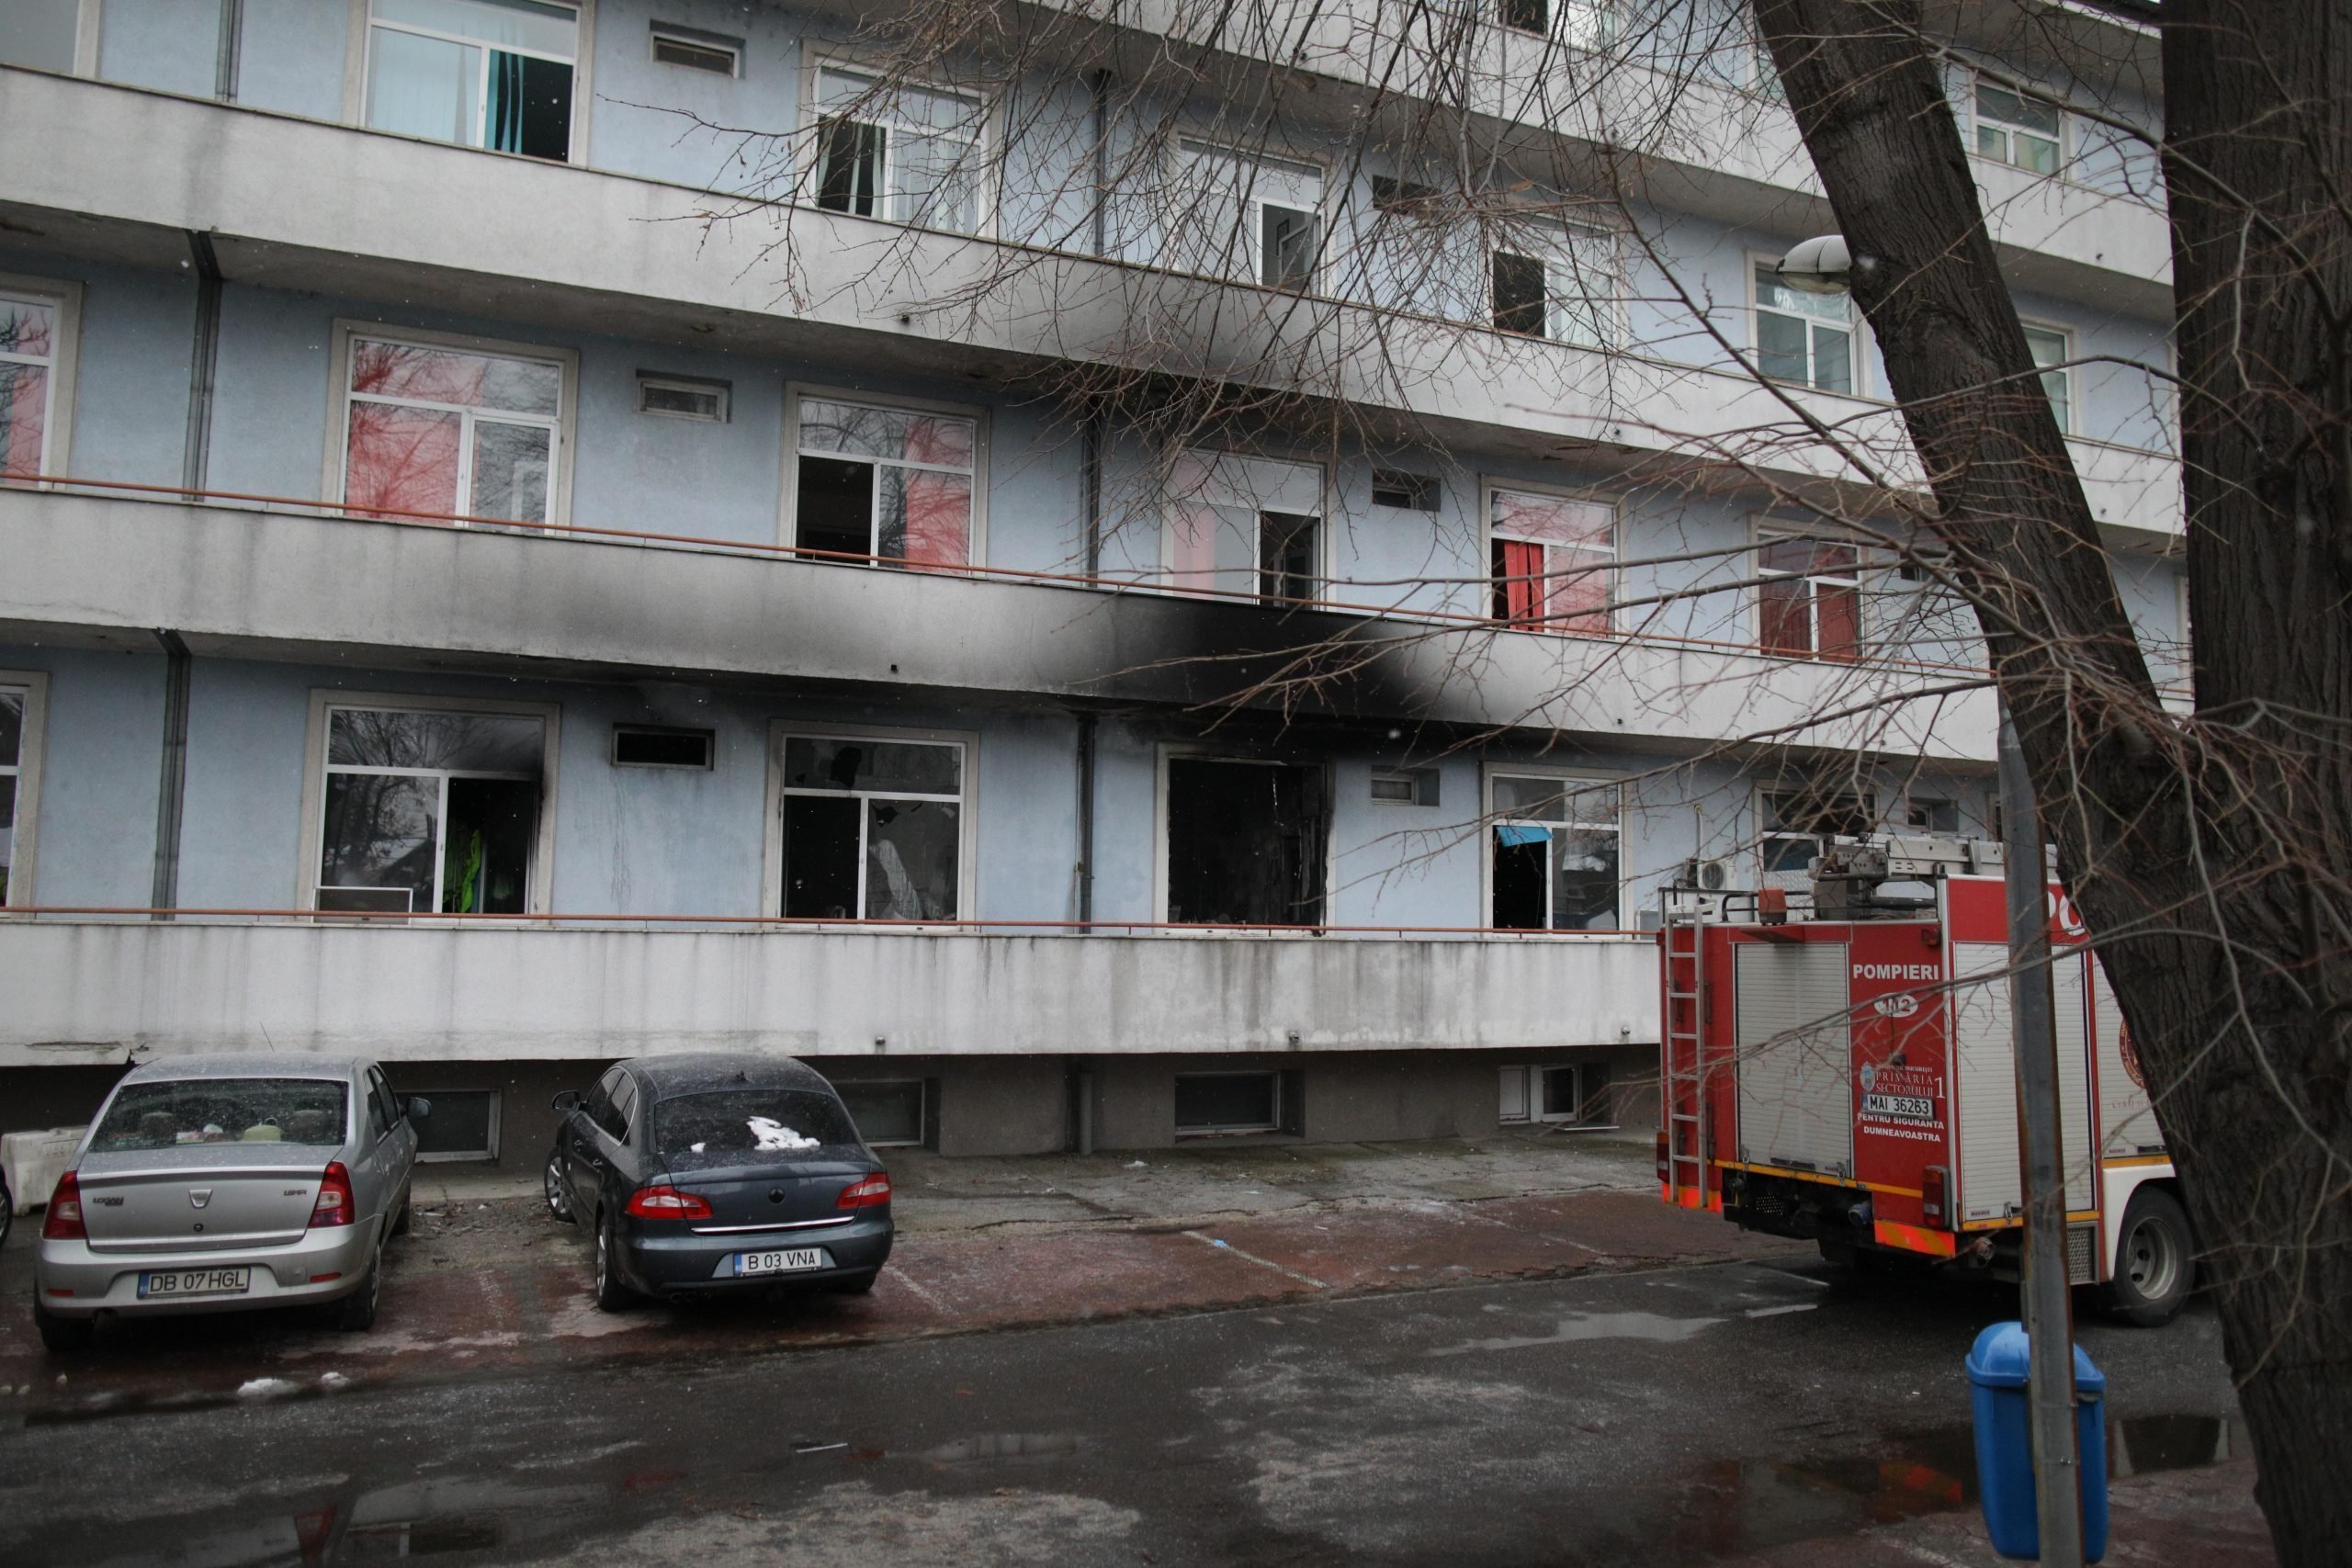 Managerul Spitalului „Matei Balș” spune că pavilionul care a luat foc era într-o stare bună: Instalația fusese verificată recent